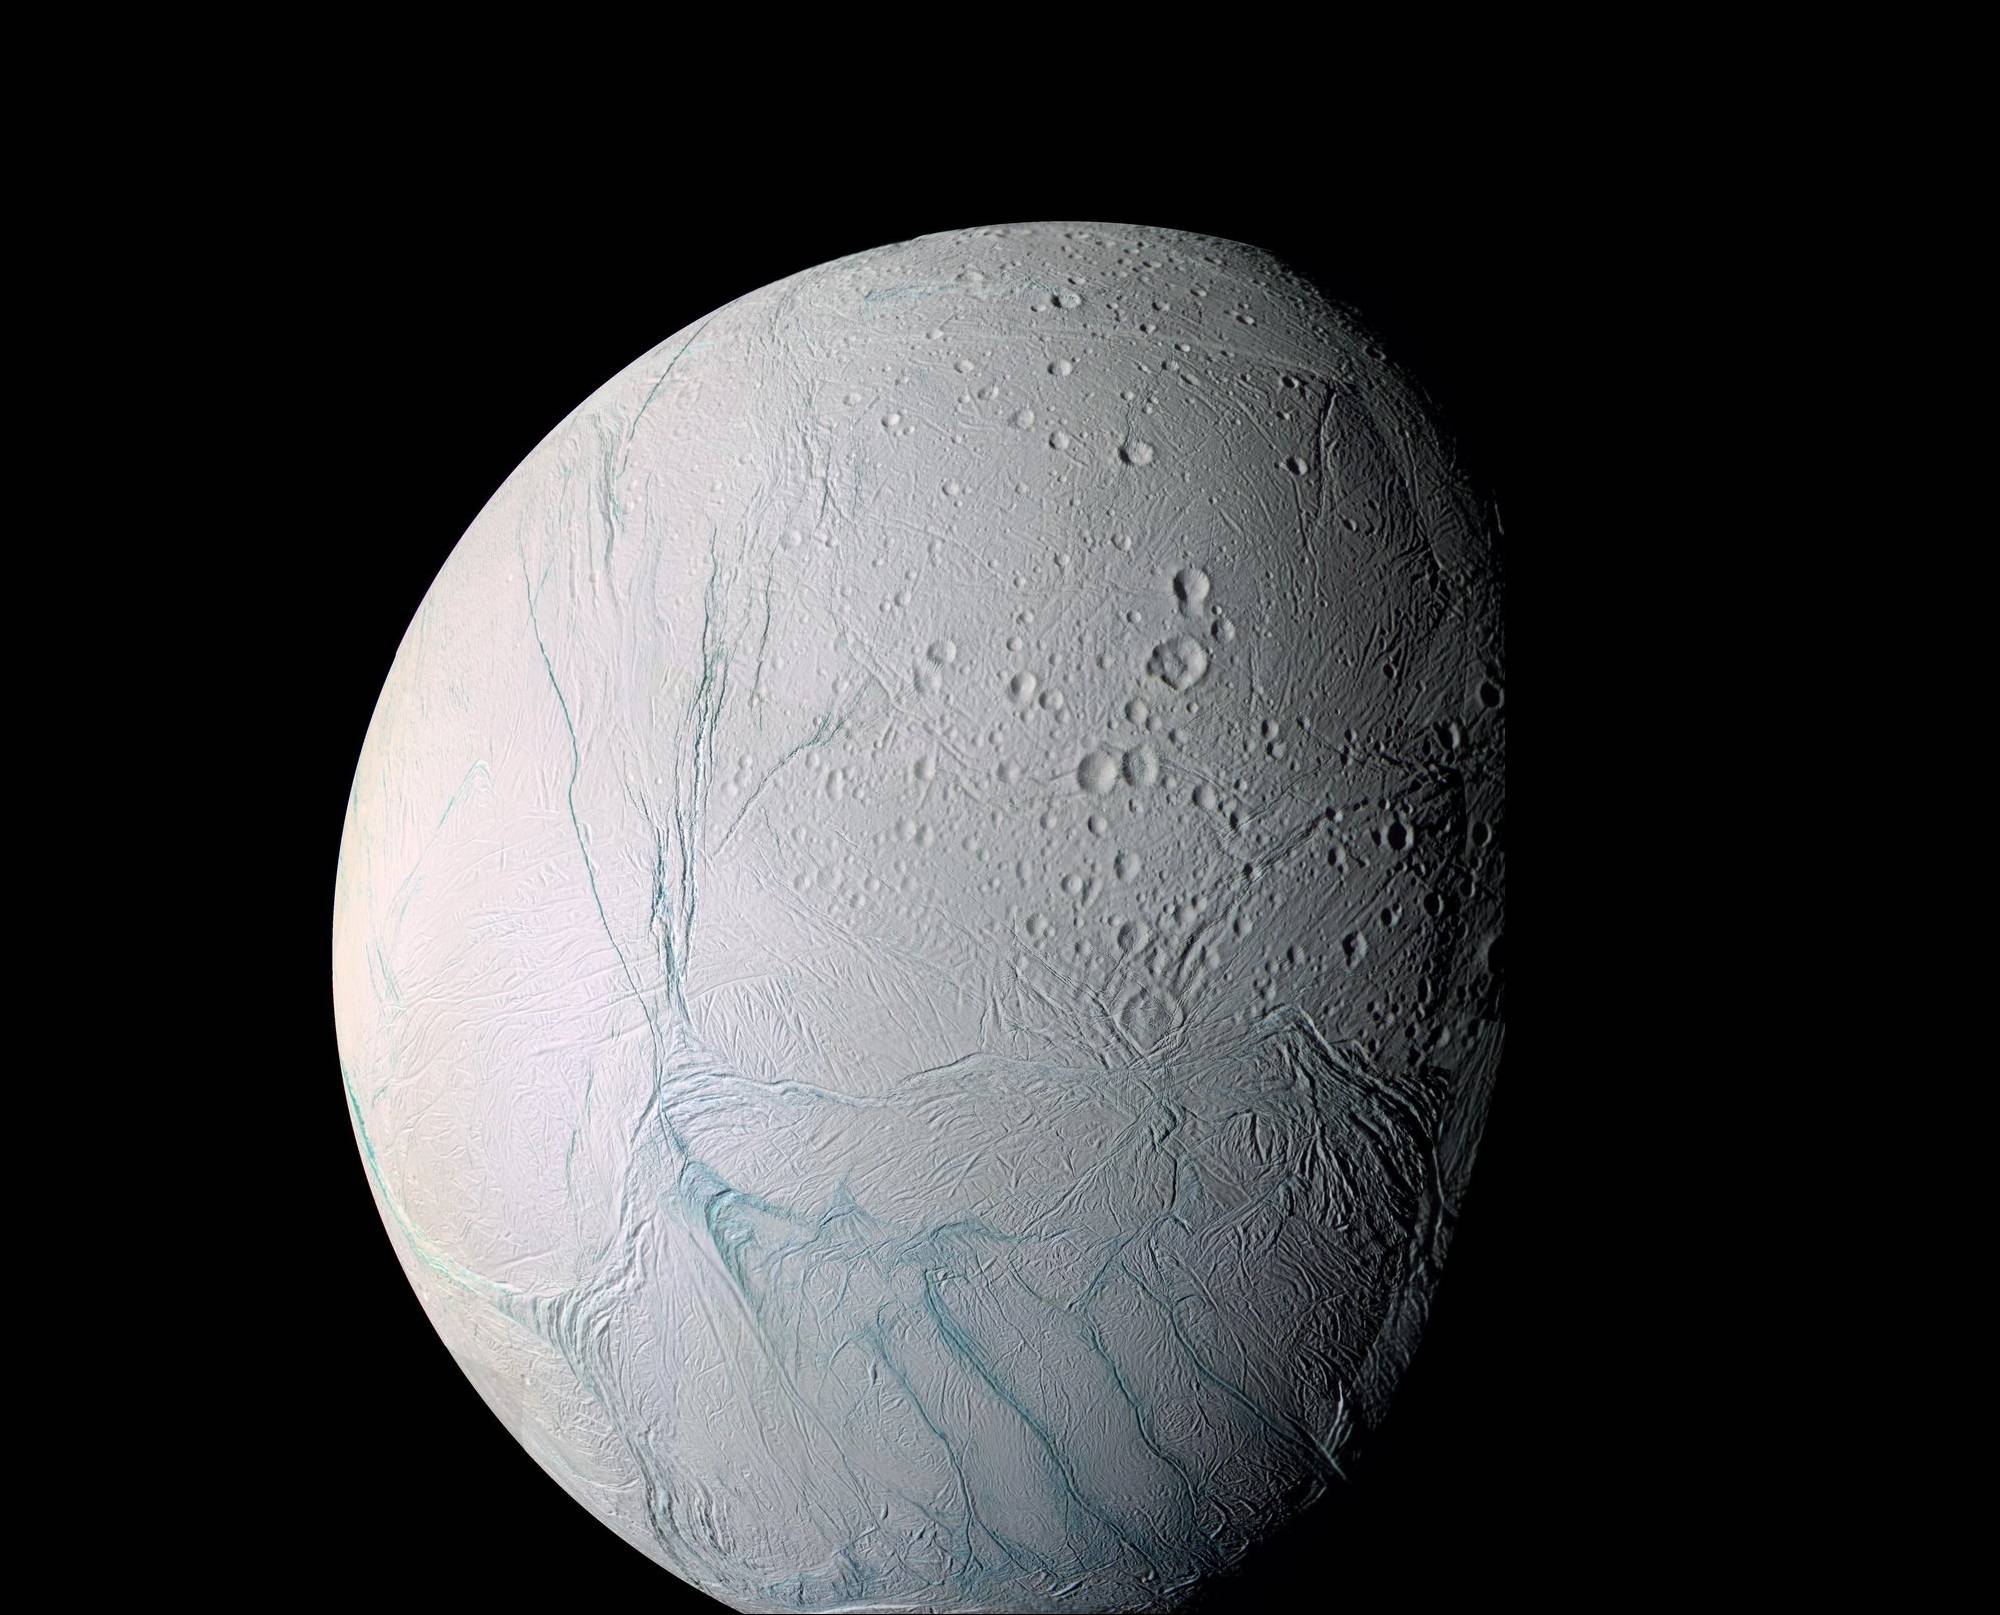 Vue d'Encelade, une lune glacée de Saturne, prise par la sonde Cassini. On y voit les « rayures de tigre » qui déchirent son pôle Sud, à travers desquelles s'échappent des panaches d'eau et d'autres composés. © Nasa, JPL-Caltech, Space Science Institute